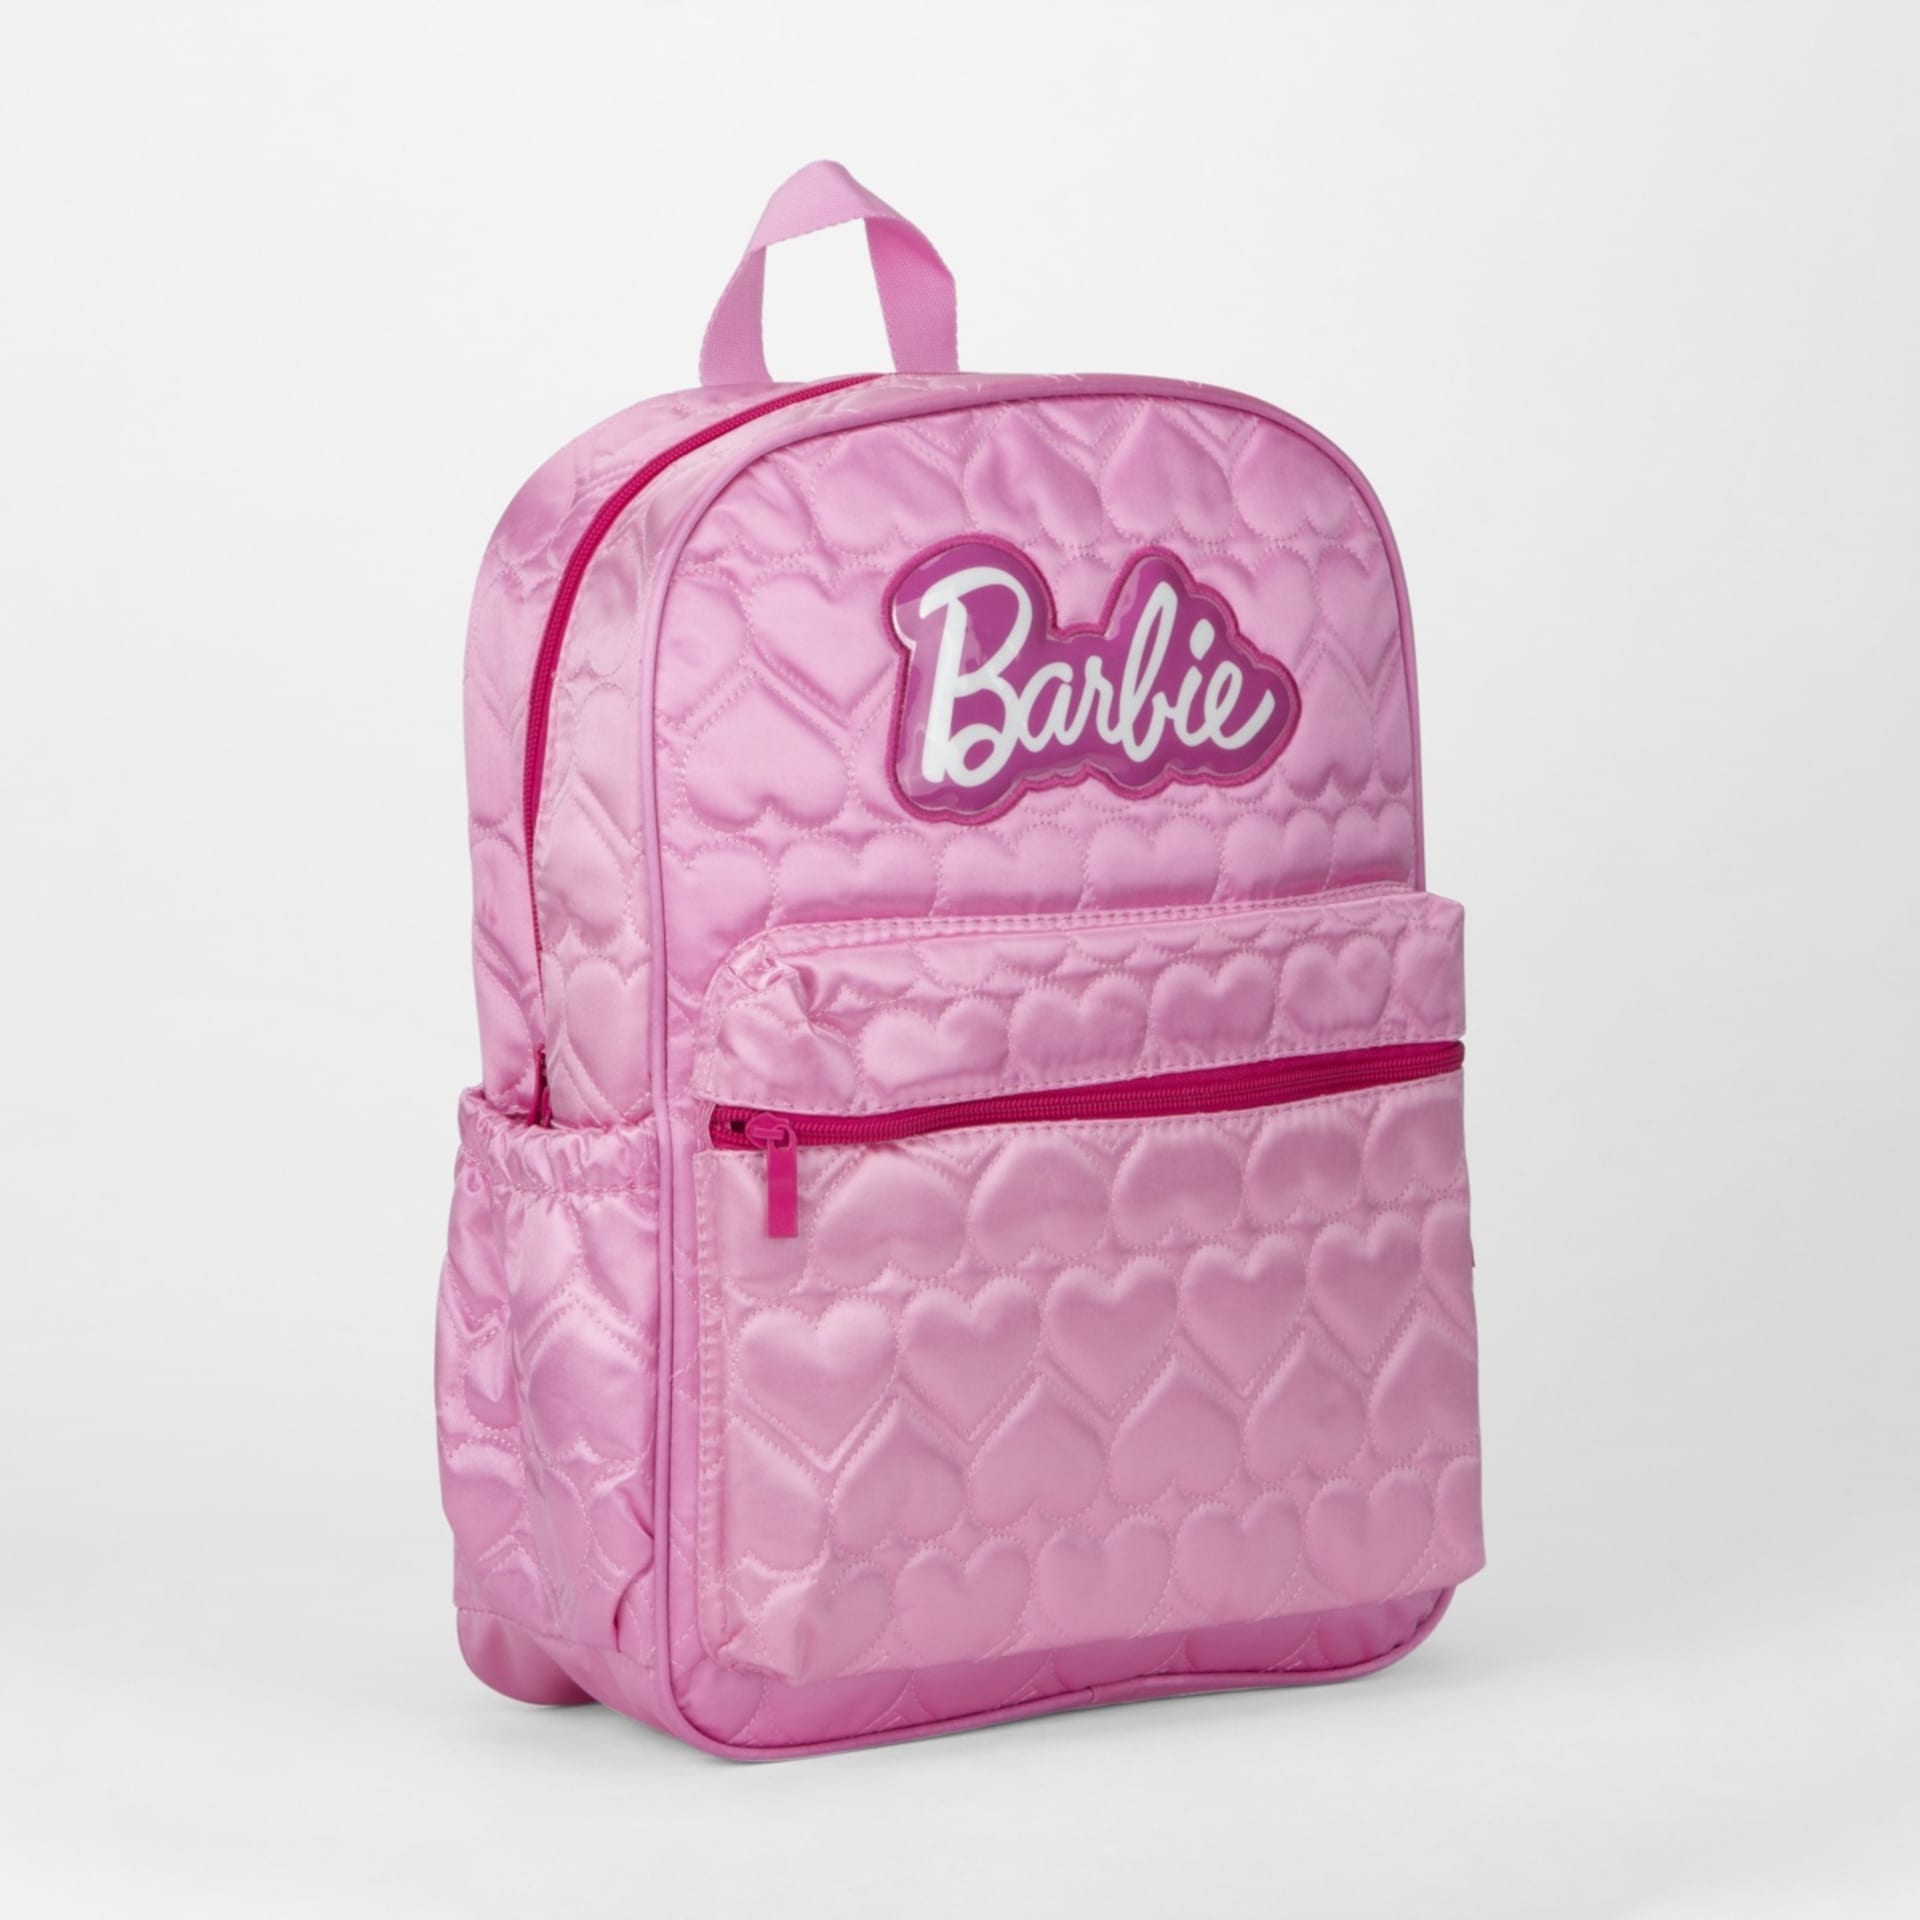 Barbie Backpack - Pink - Kmart NZ